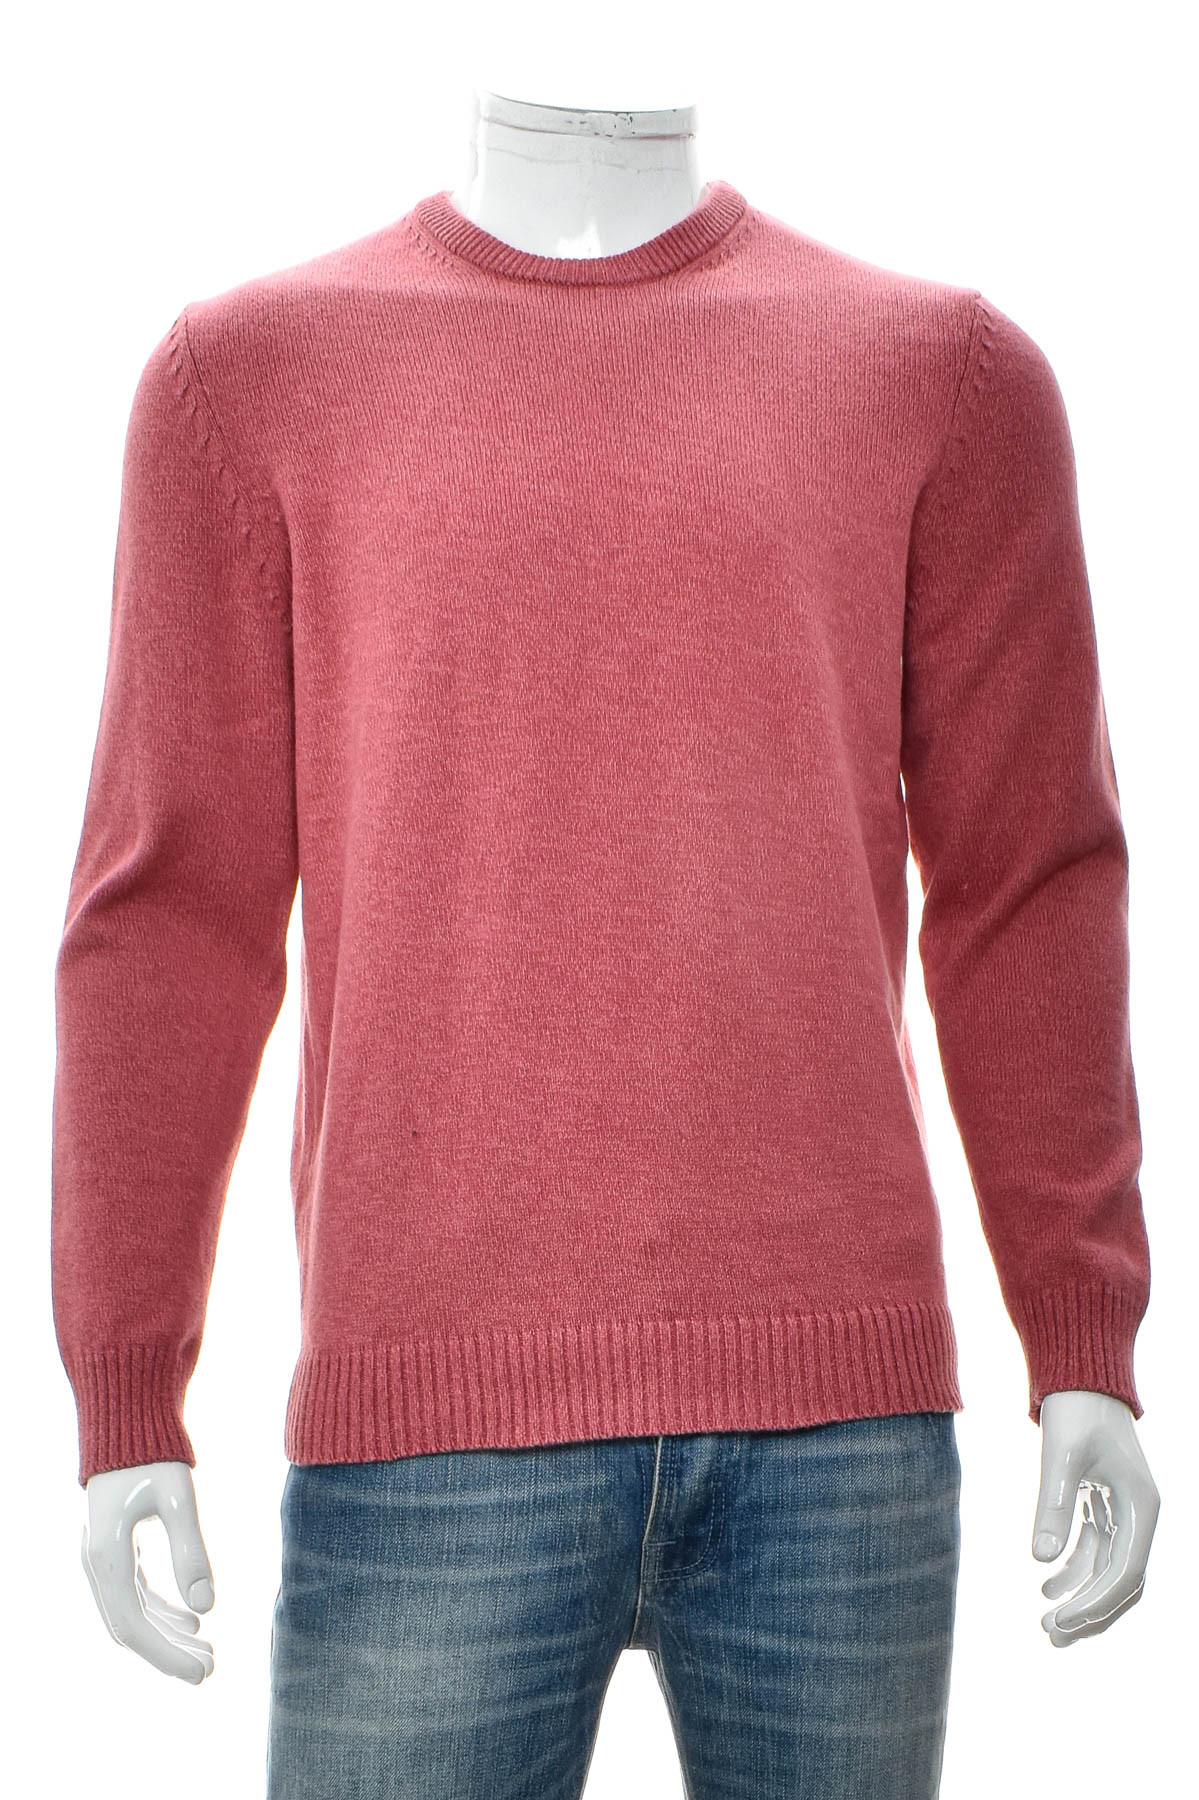 Men's sweater - Atlantic Bay - 0